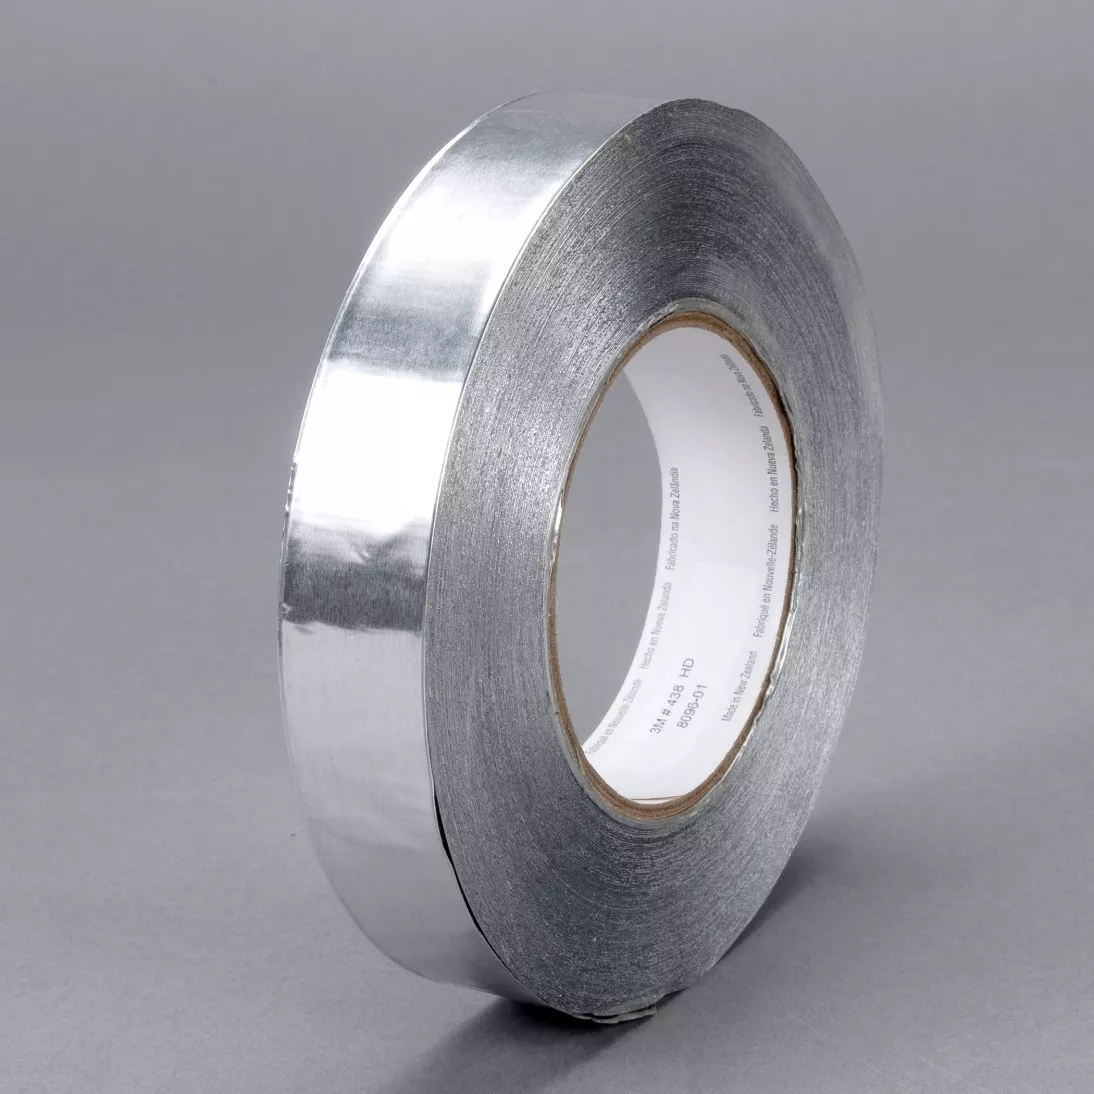 3M™ Heavy Duty Aluminum Foil Tape 438, Silver, 1 in x 60 yd, 7.2 mil, 48
rolls per case